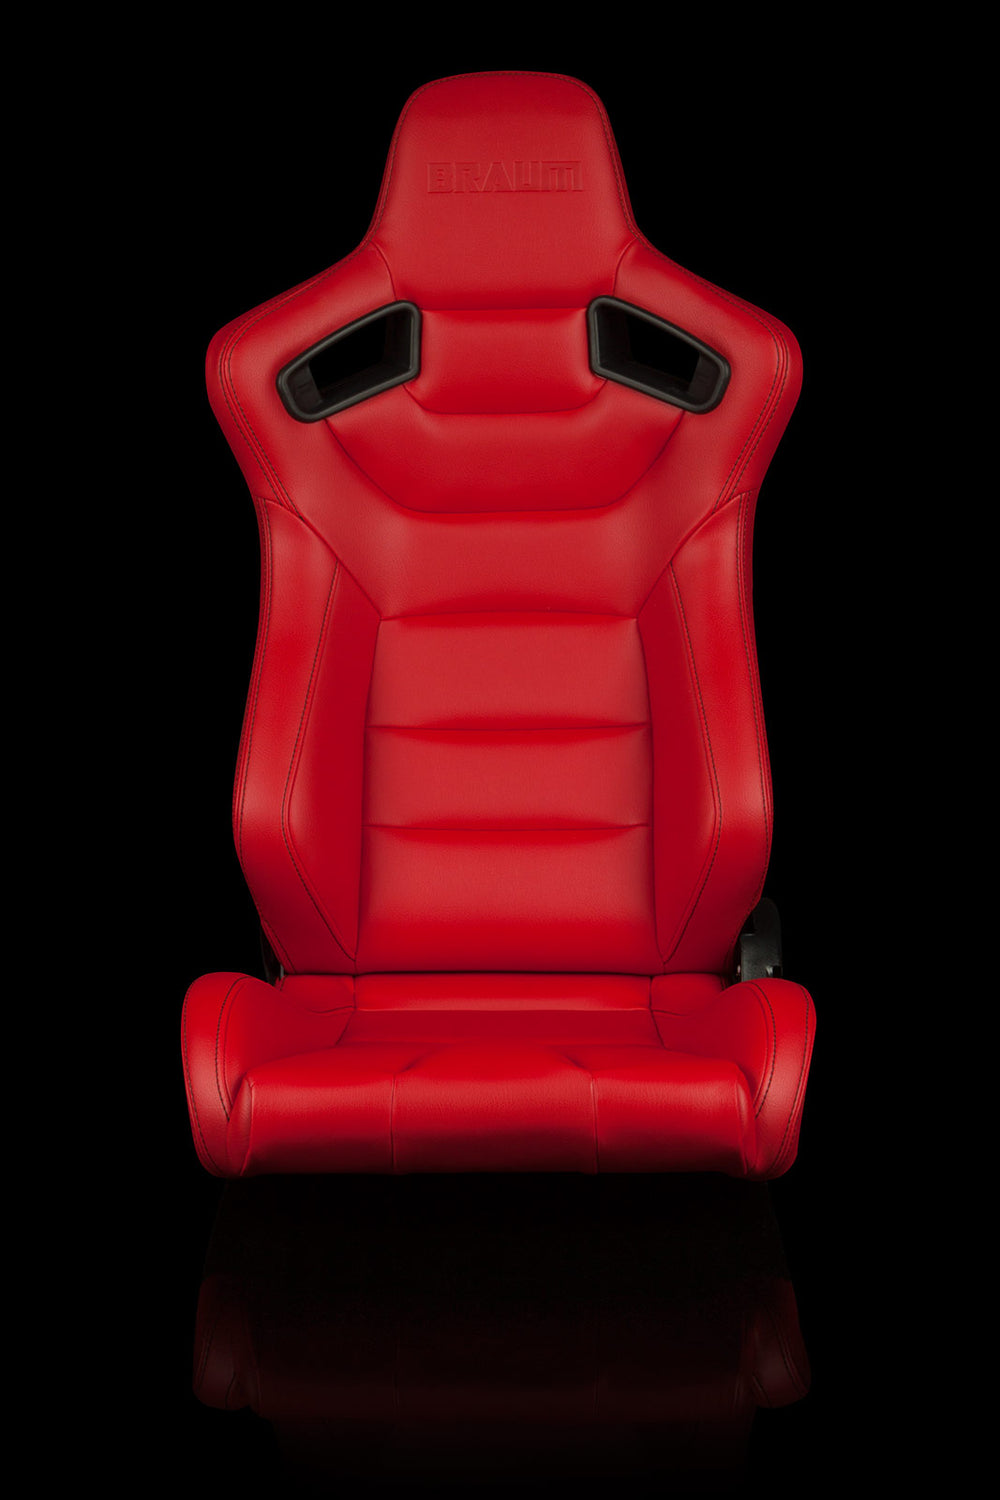 ELITE SERIES RACING SEATS (RED) – PAIR